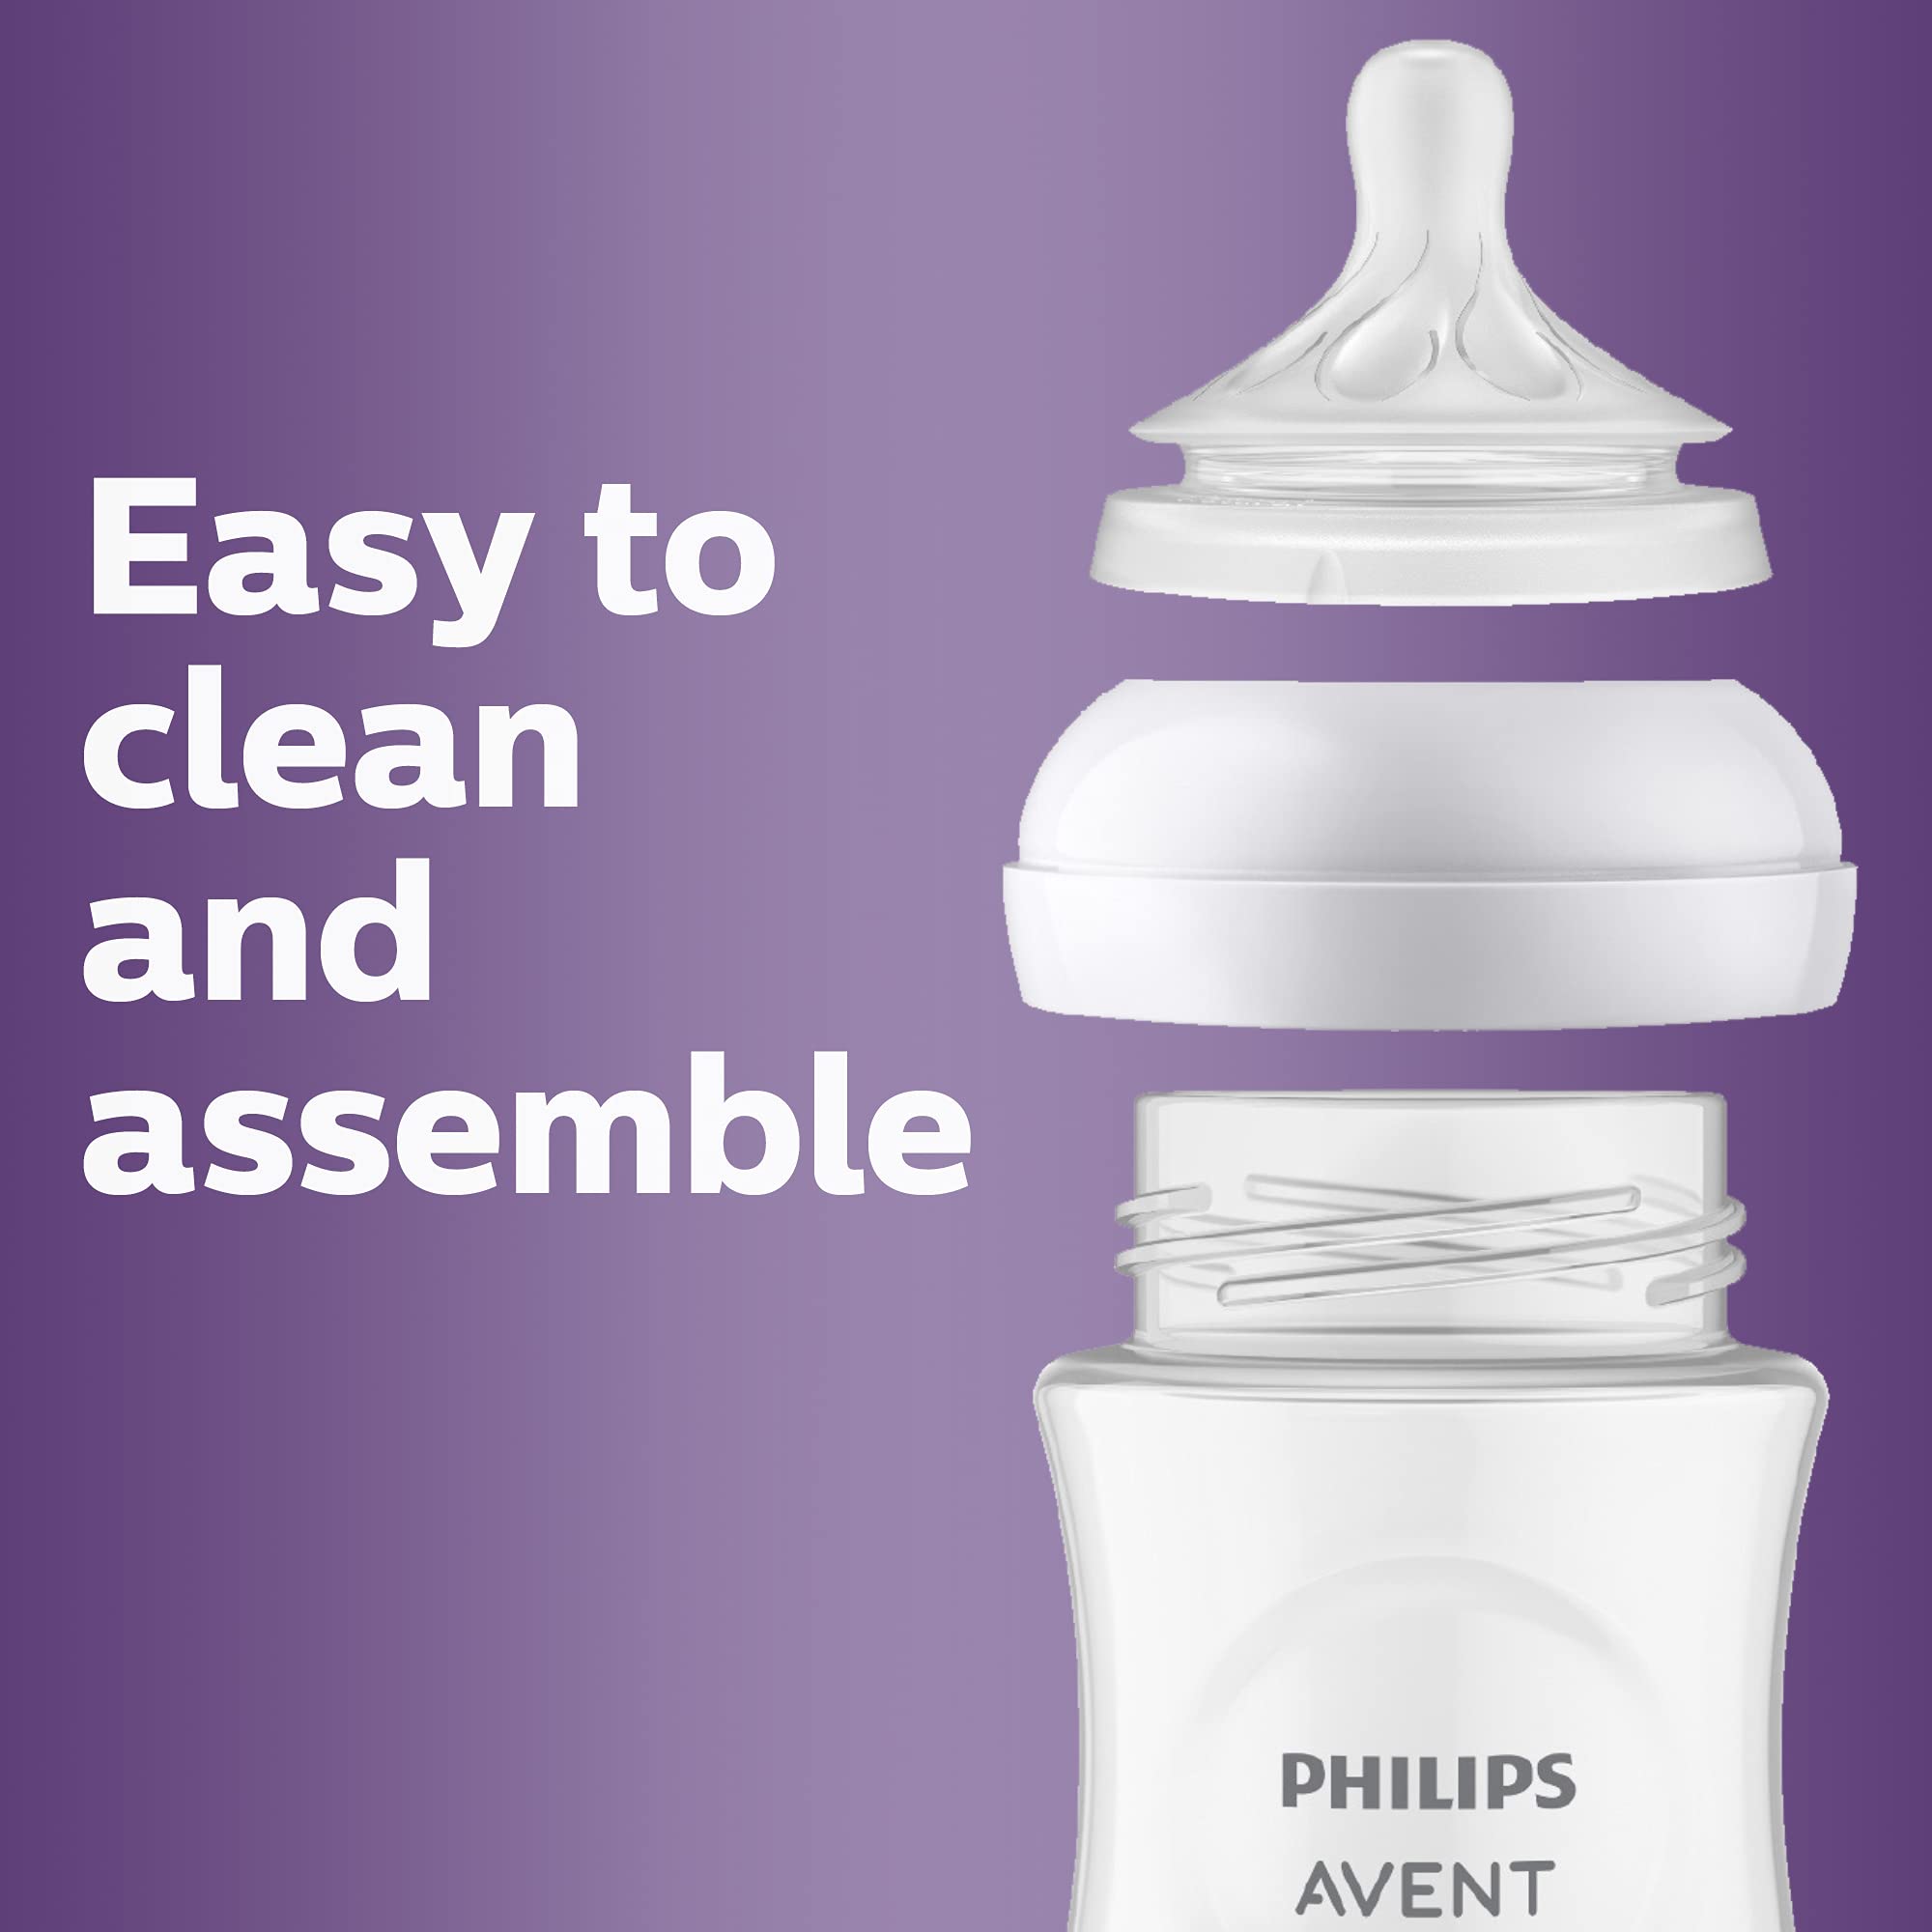 Philips AVENT Natural Response Baby Bottle Nipples Flow 1, 4pk, SCY961/04